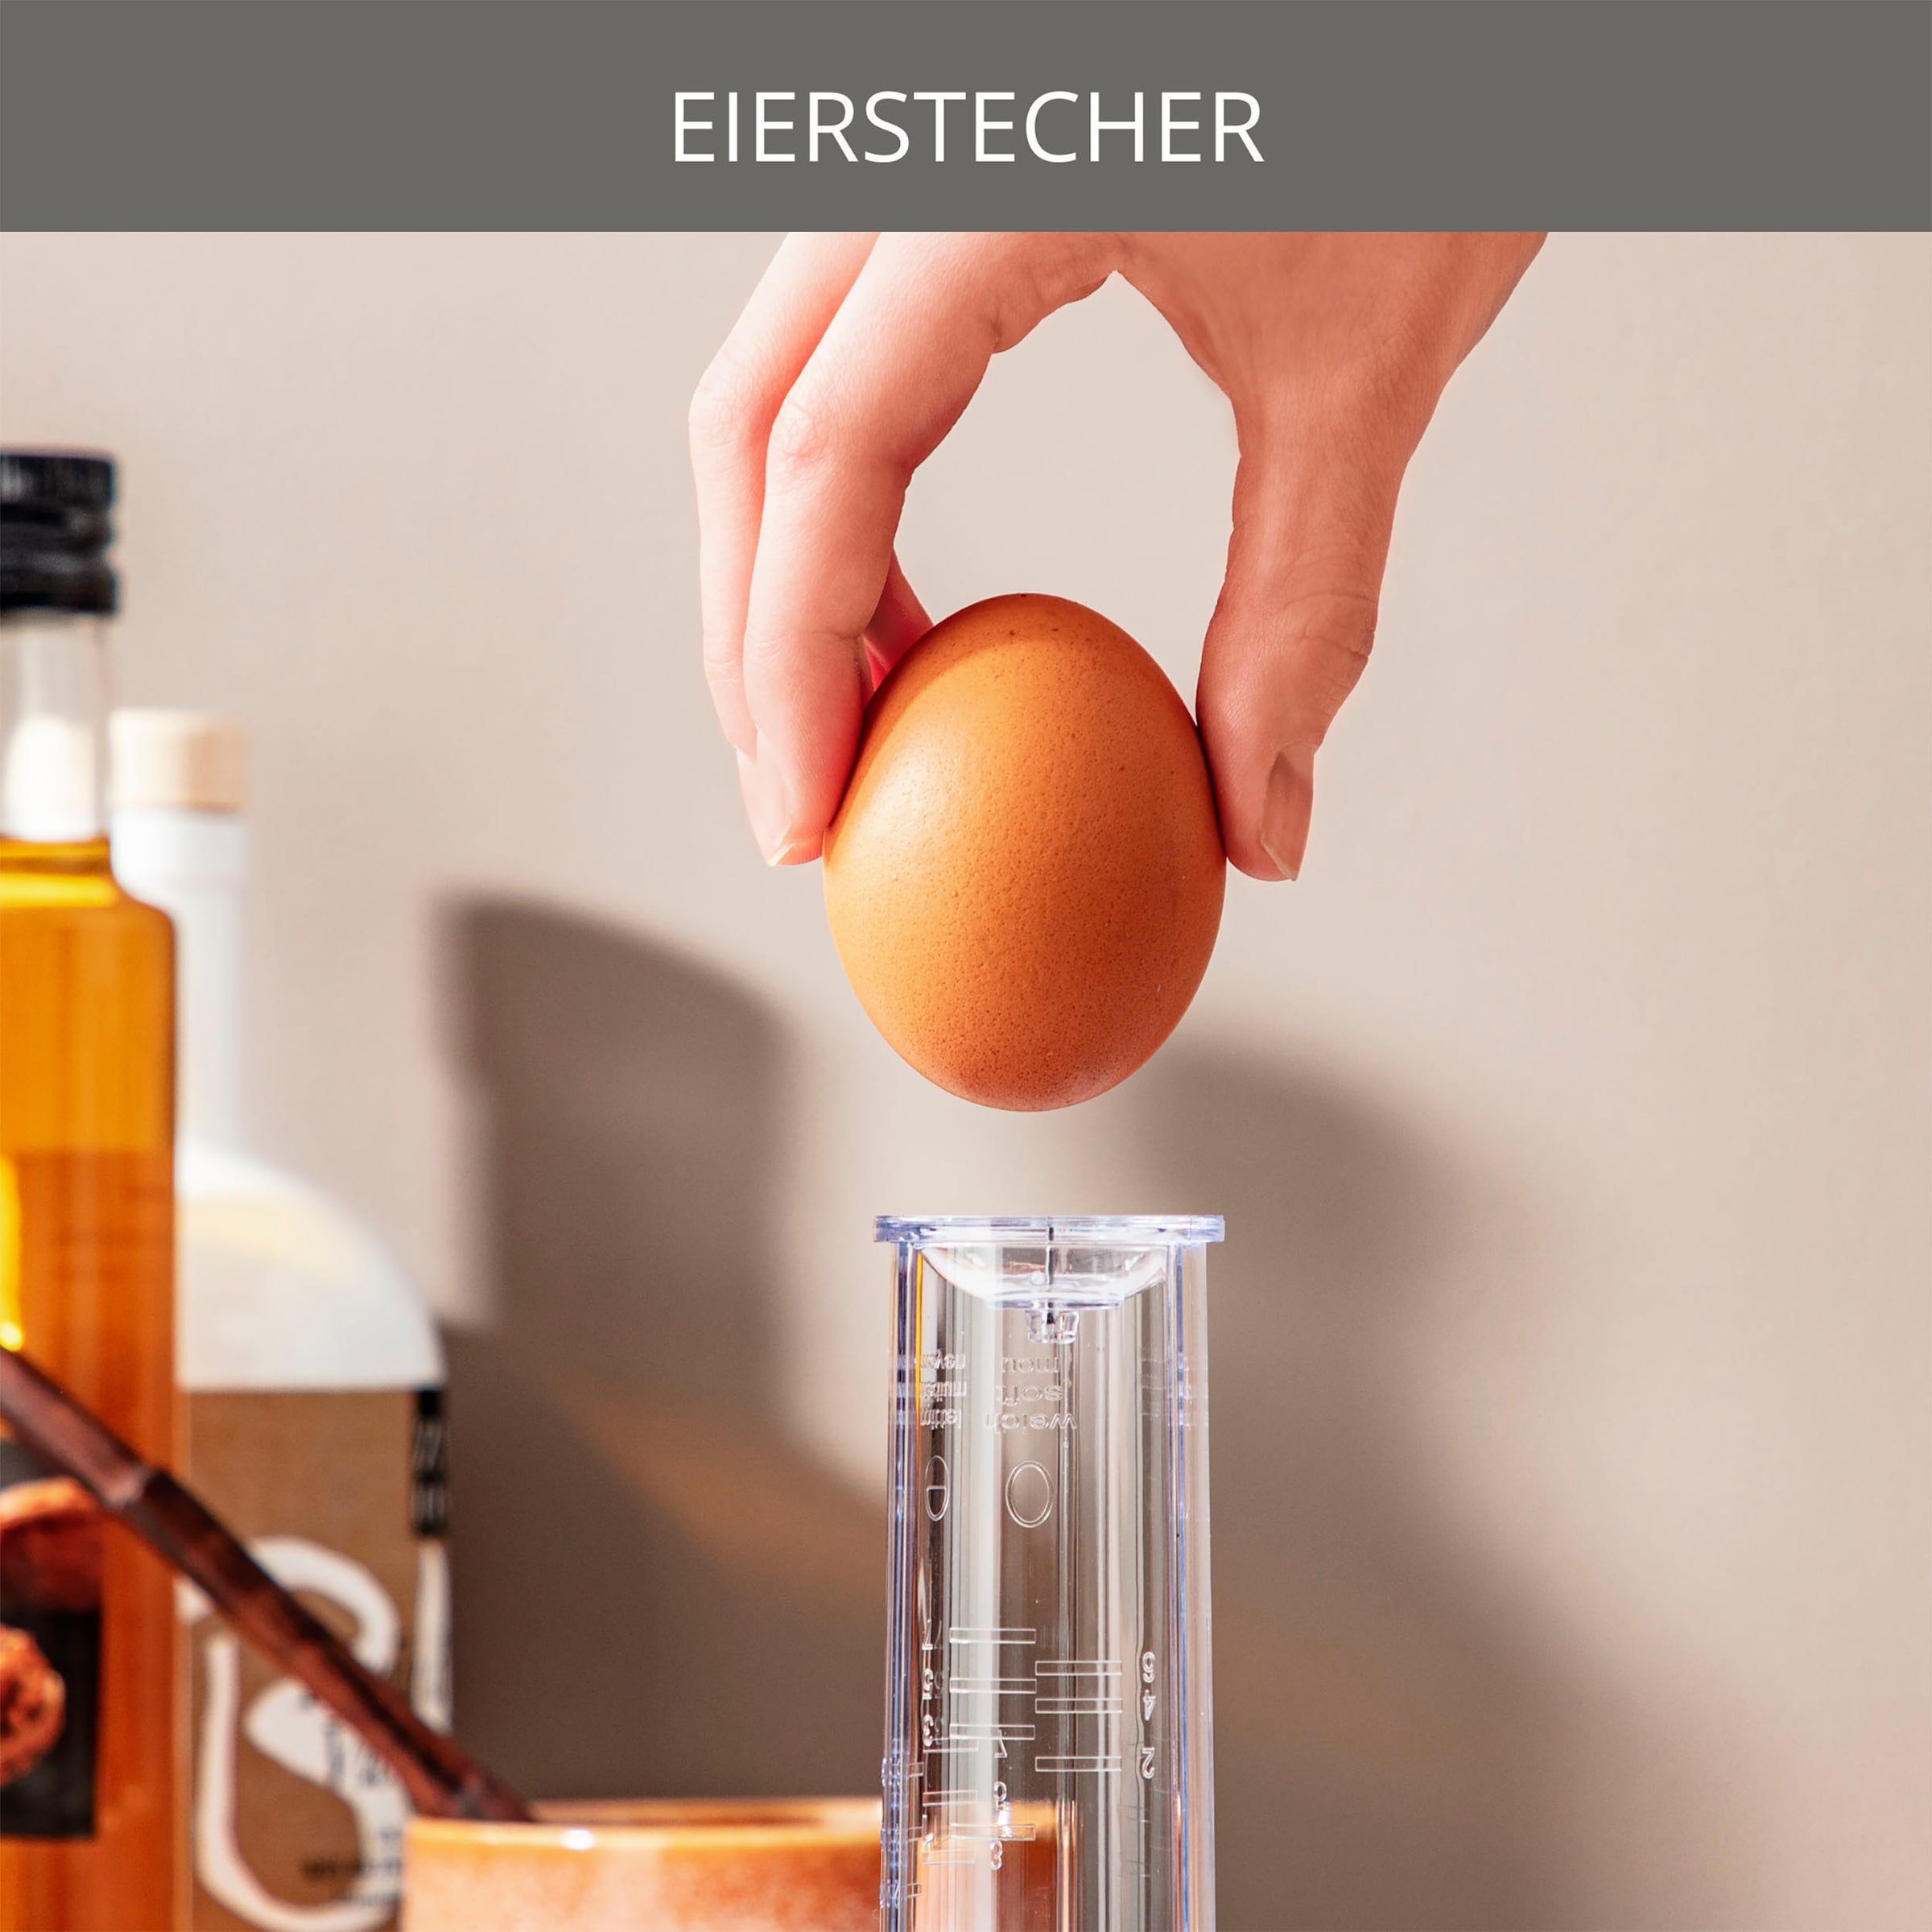 Krups Eierkocher »F23370 Ovomat Special«, für 7 St. Eier, 350 W, perfekte Konsistenz, 7 Eier gleichzeitig, mit akustischem Signal